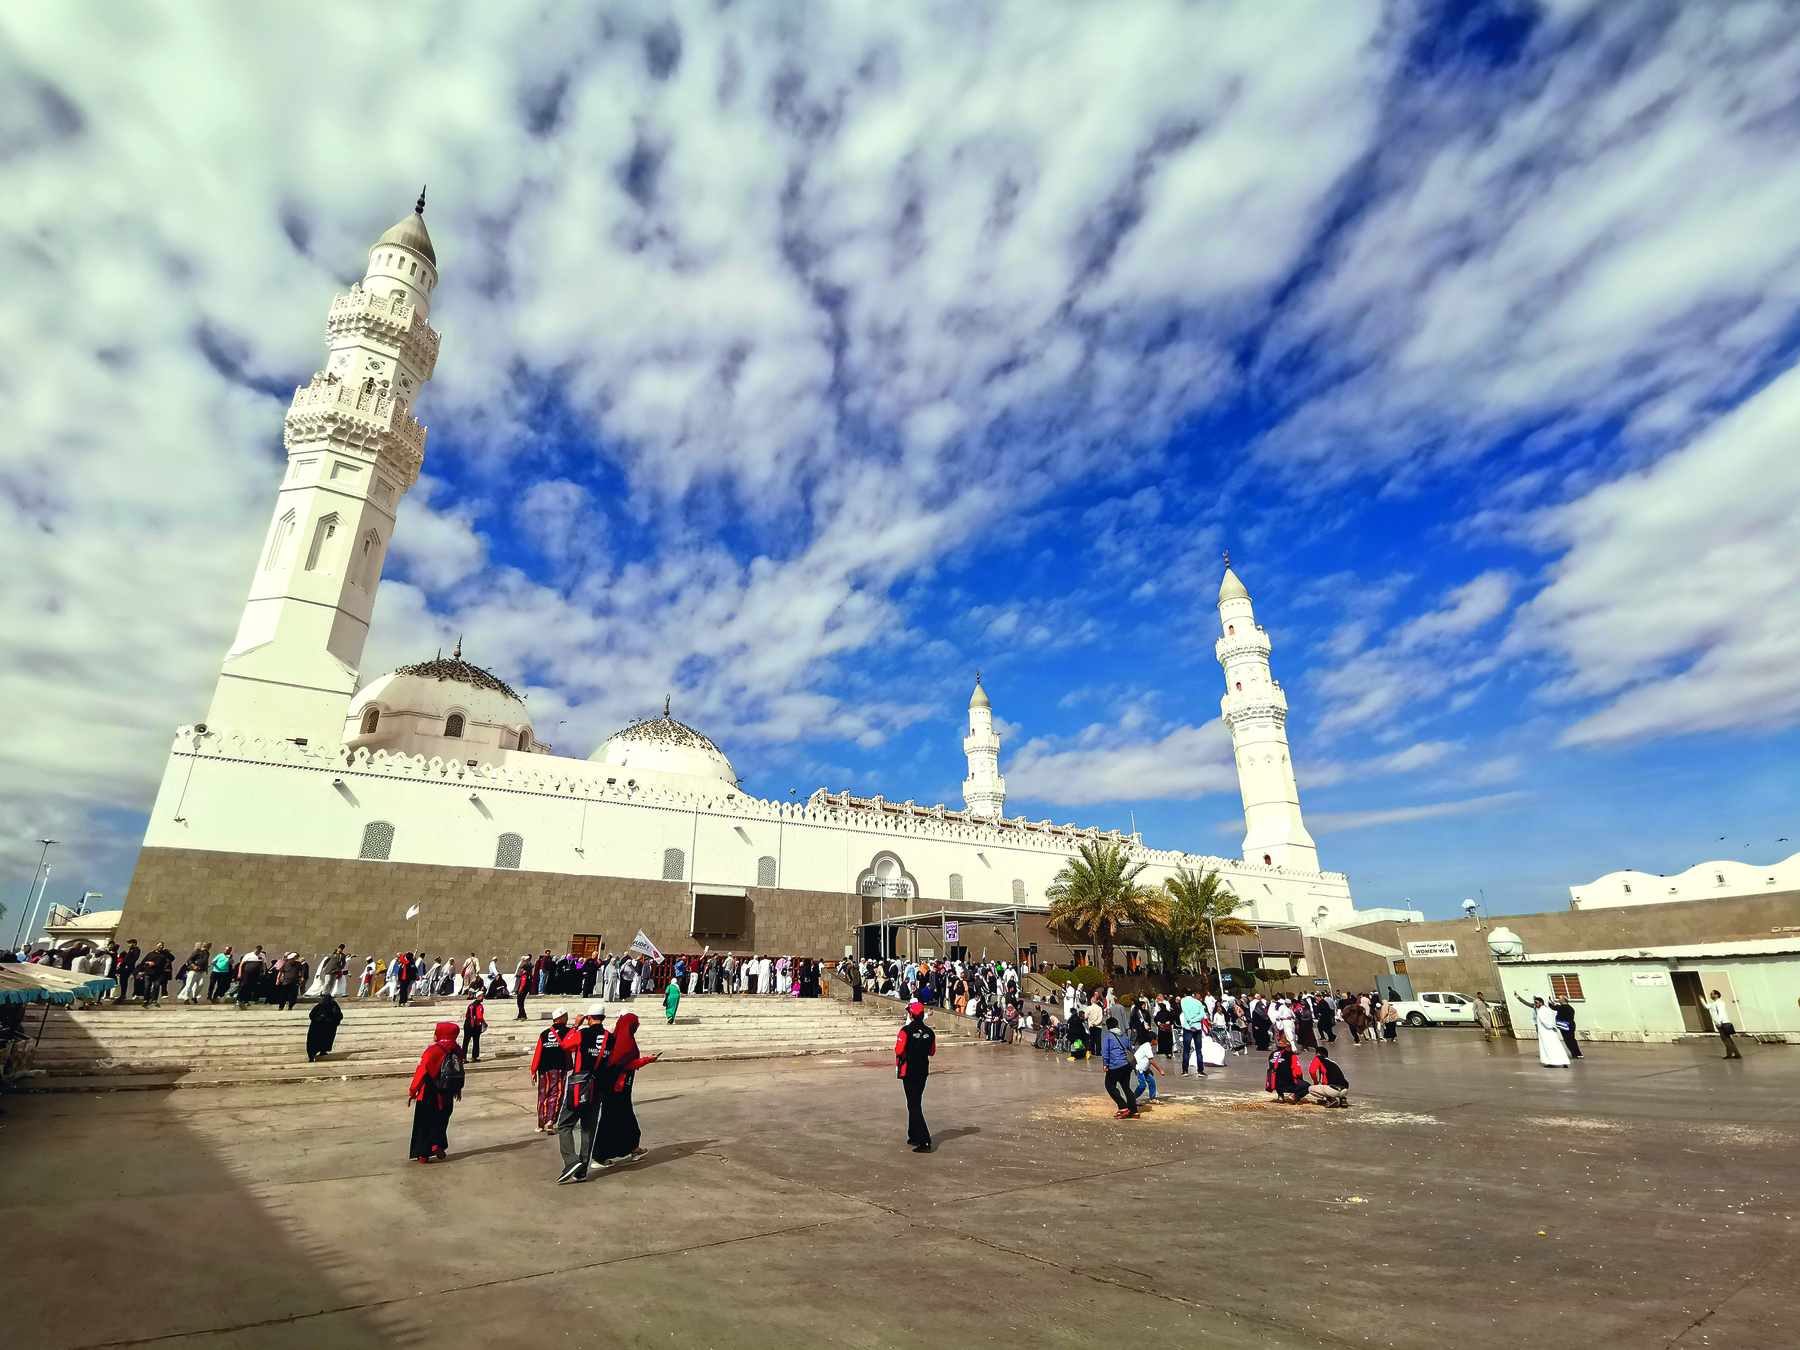 Fotografia. Pessoas em frente a uma grande mesquita de muros brancos. Nas extremidades dos muros, grandes torres chamadas minaretes. No centro do muro uma porta.